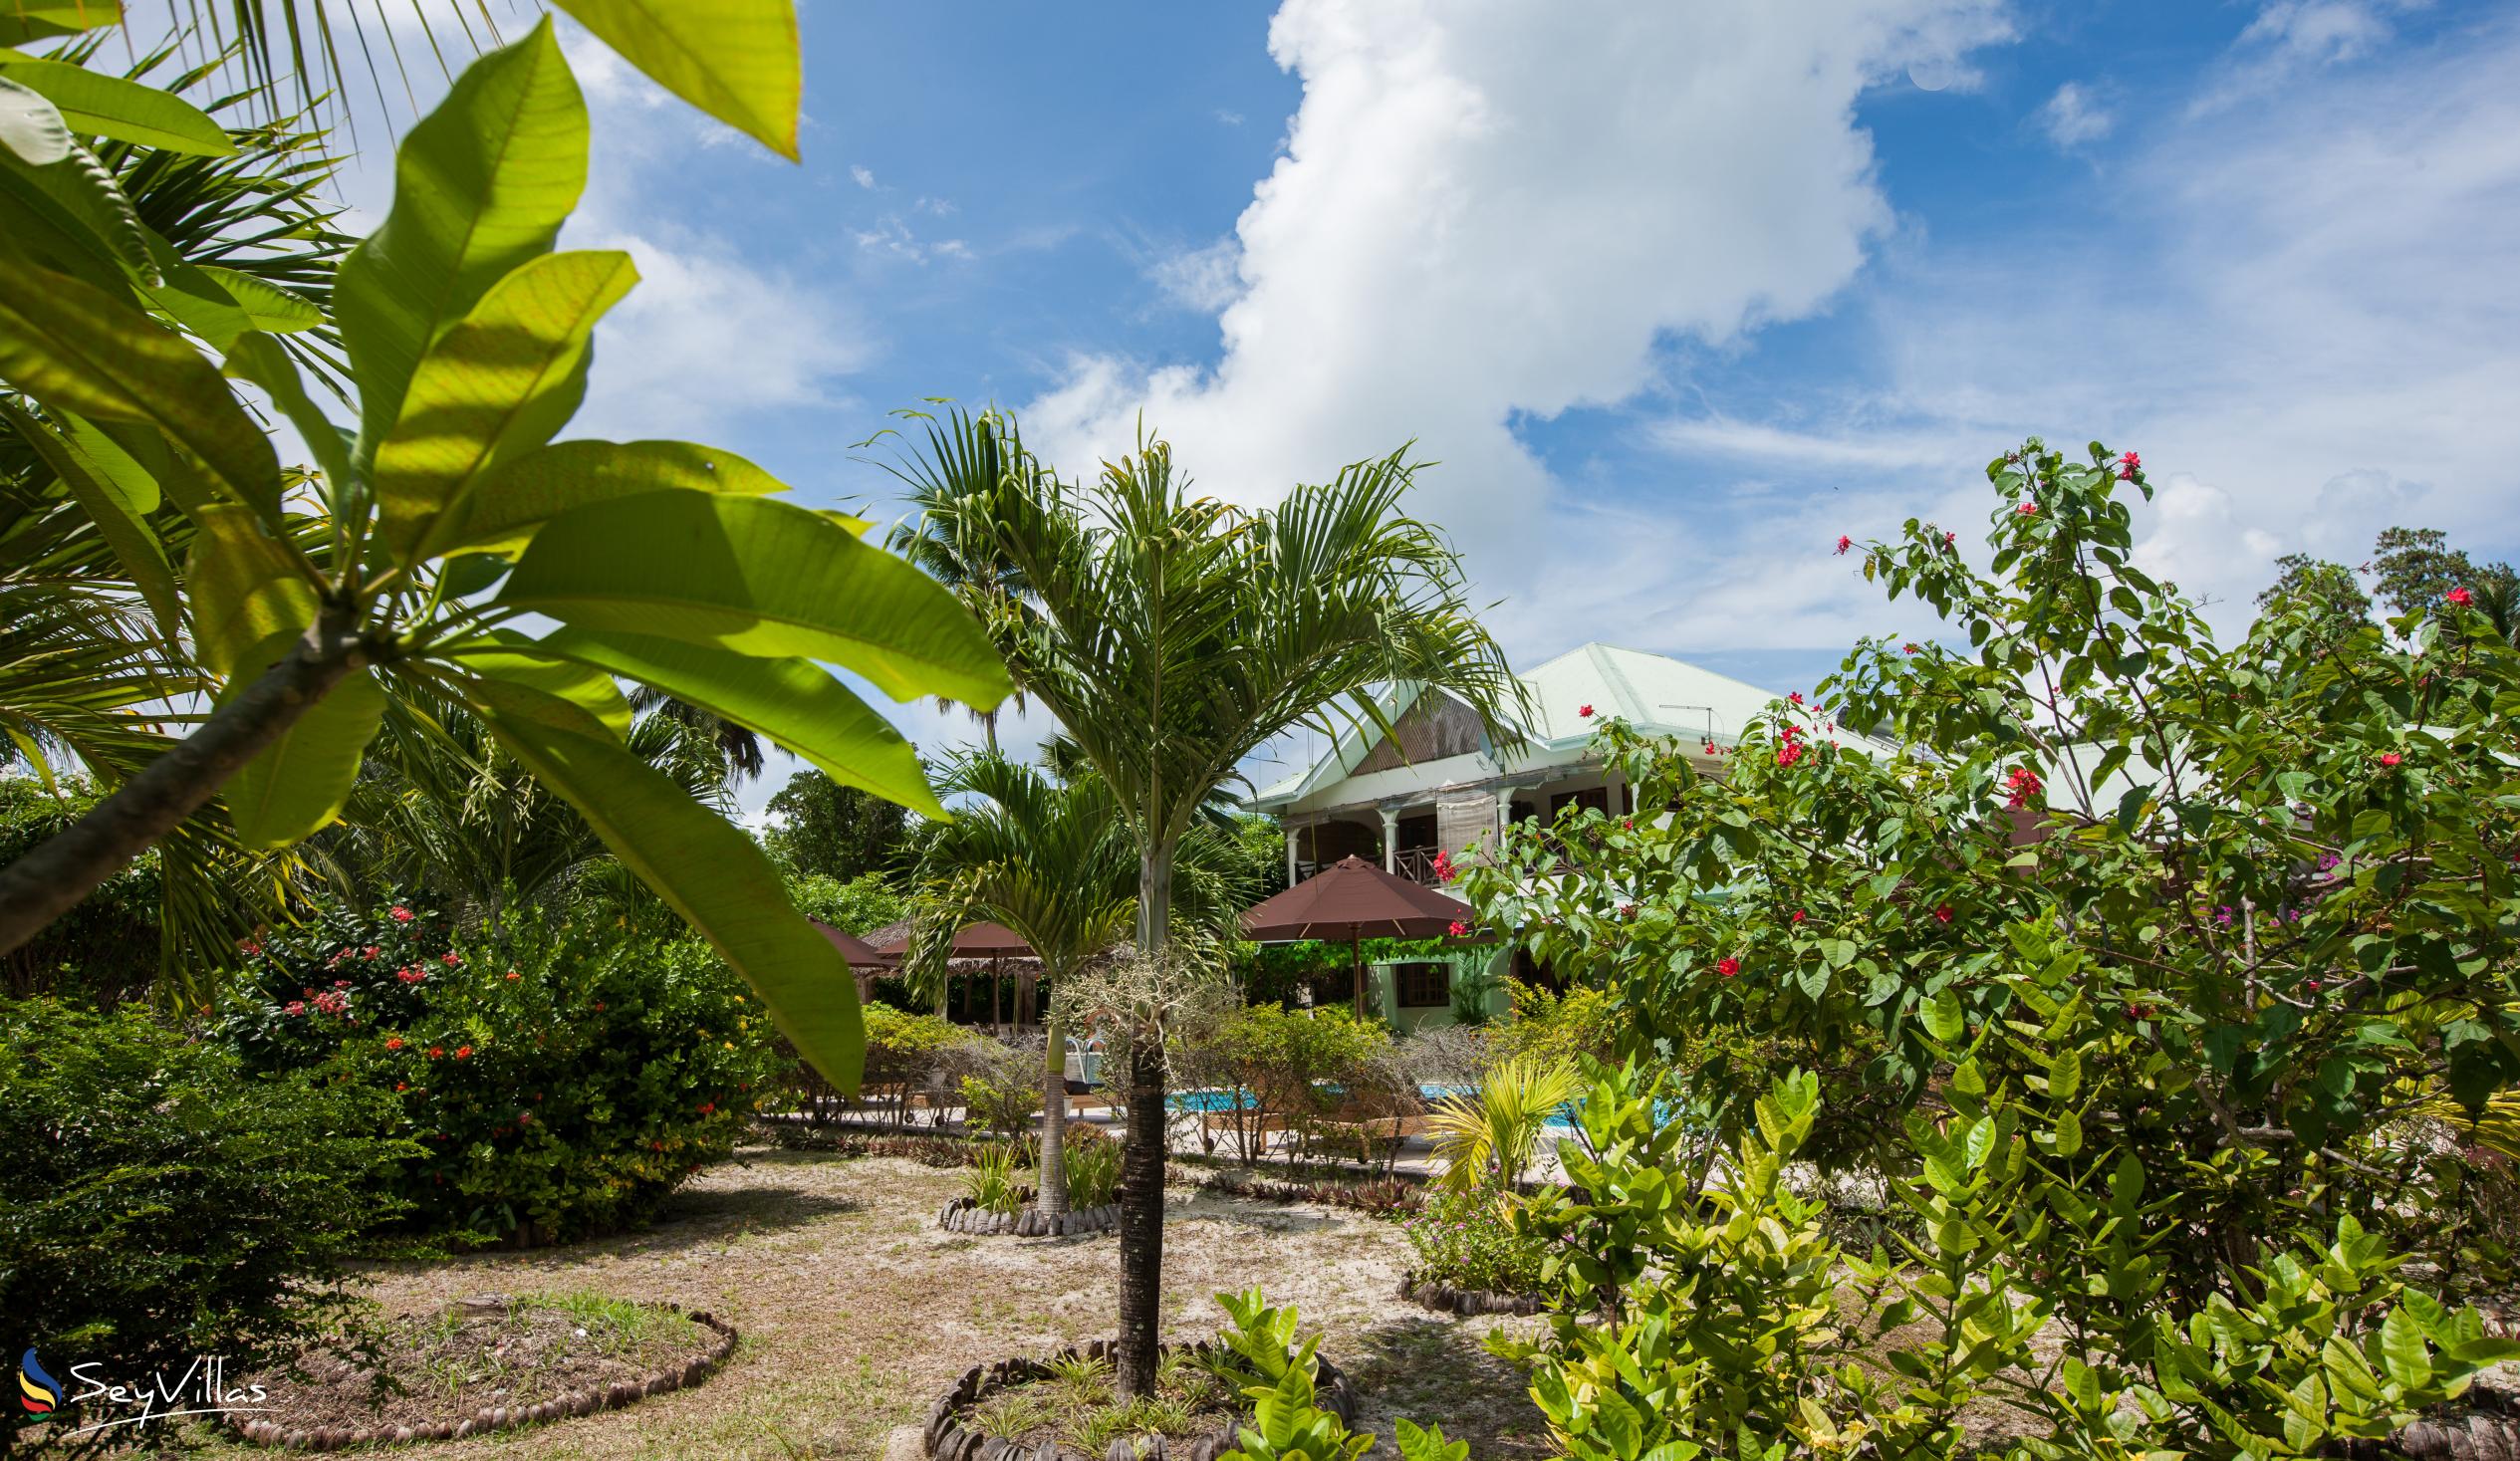 Foto 12: Villa de Cerf - Aussenbereich - Cerf Island (Seychellen)